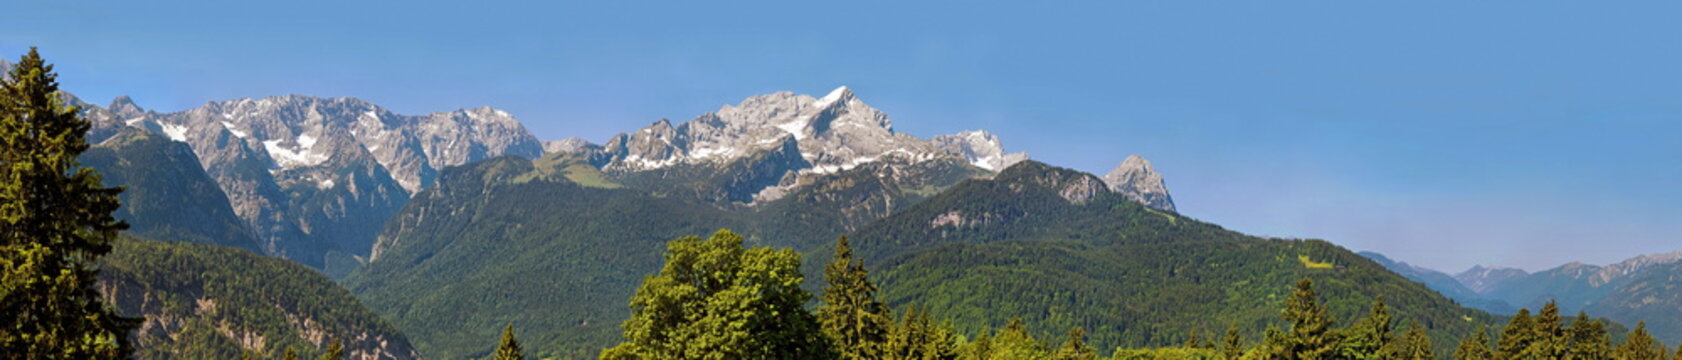 Alspitze und Zugspitze Panorama